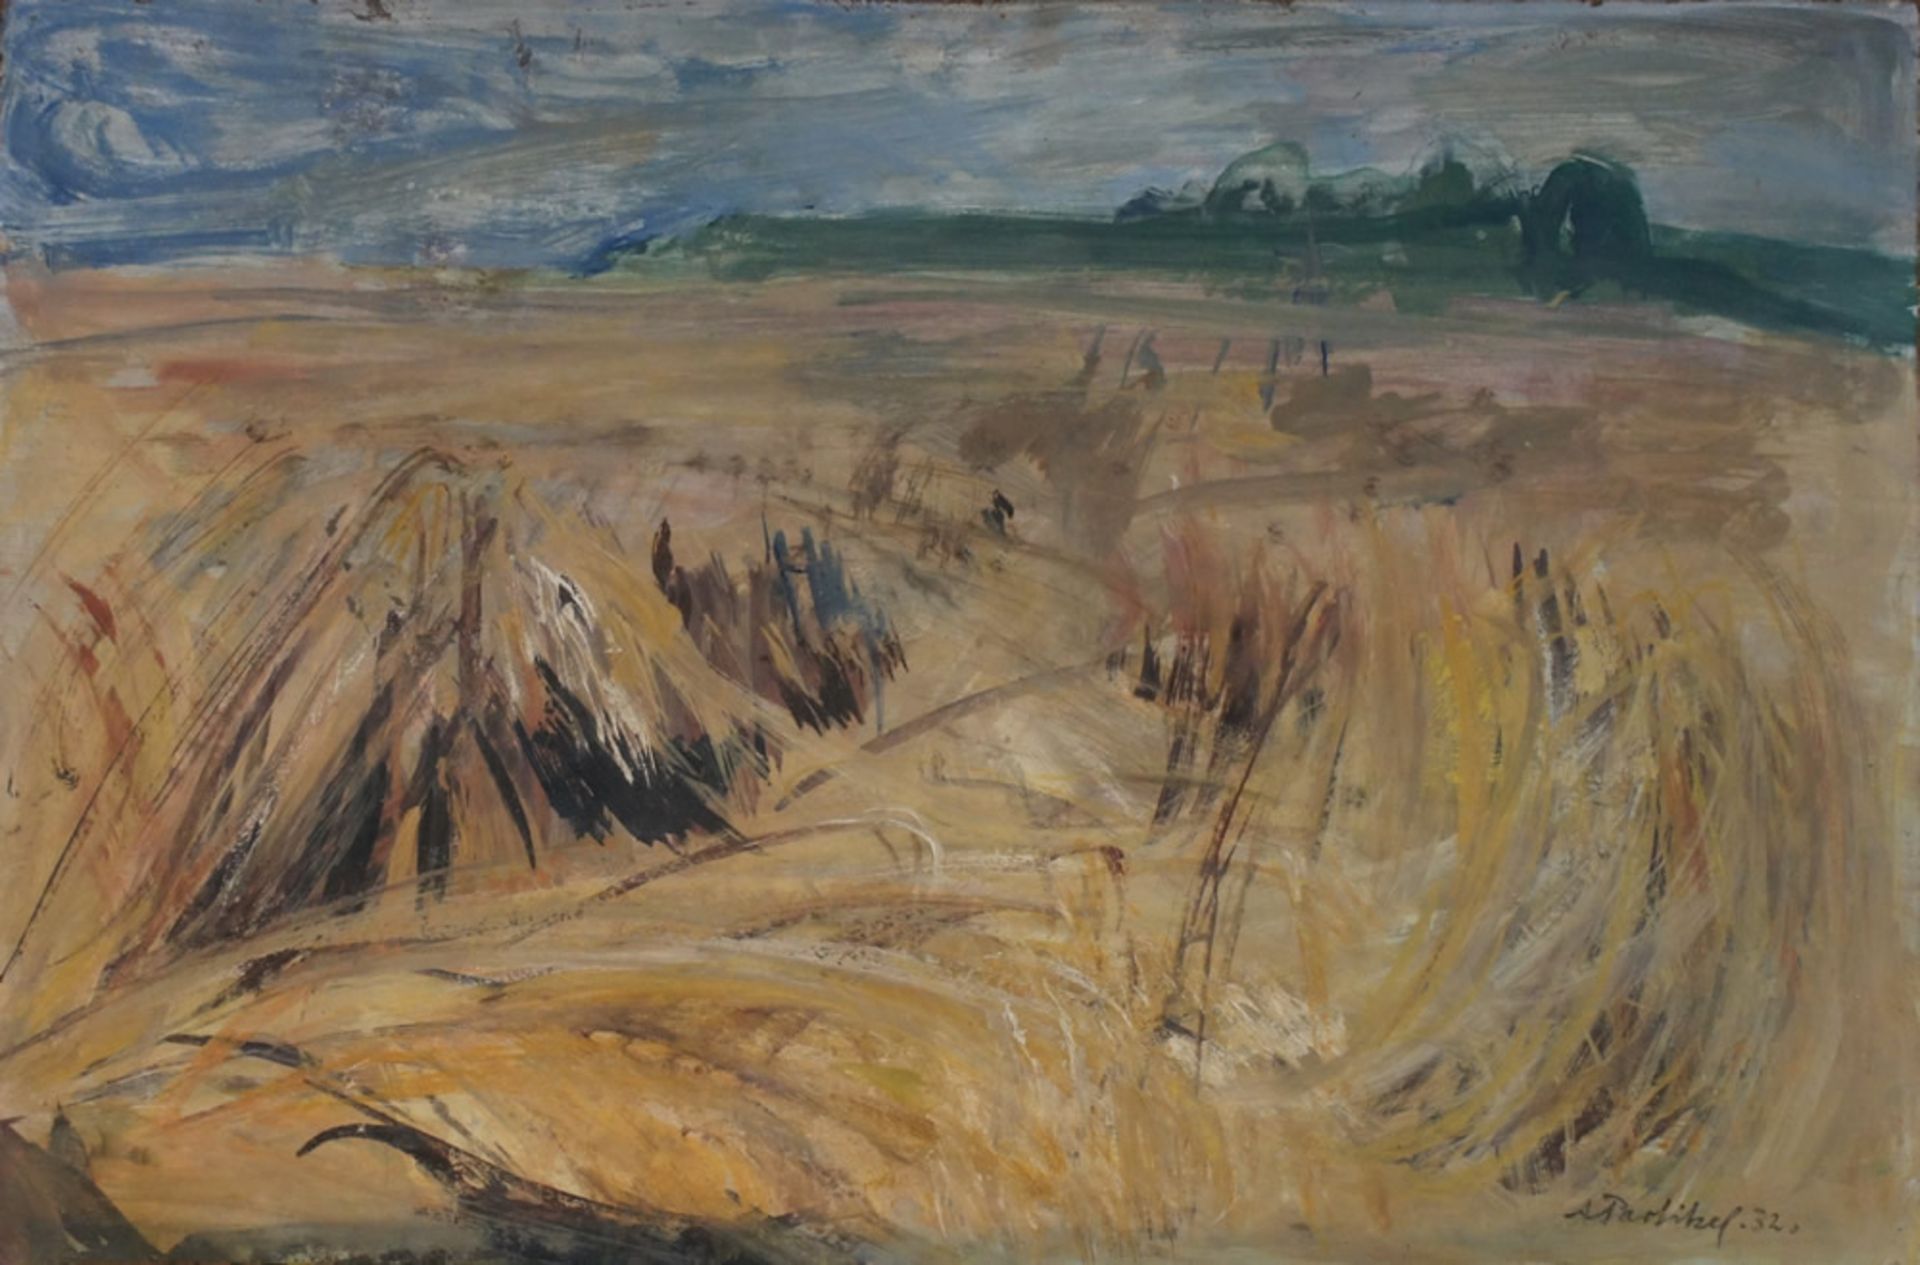 Partikel, Alfred, Landschaft, 1932, Öl, sig., 38 x 57